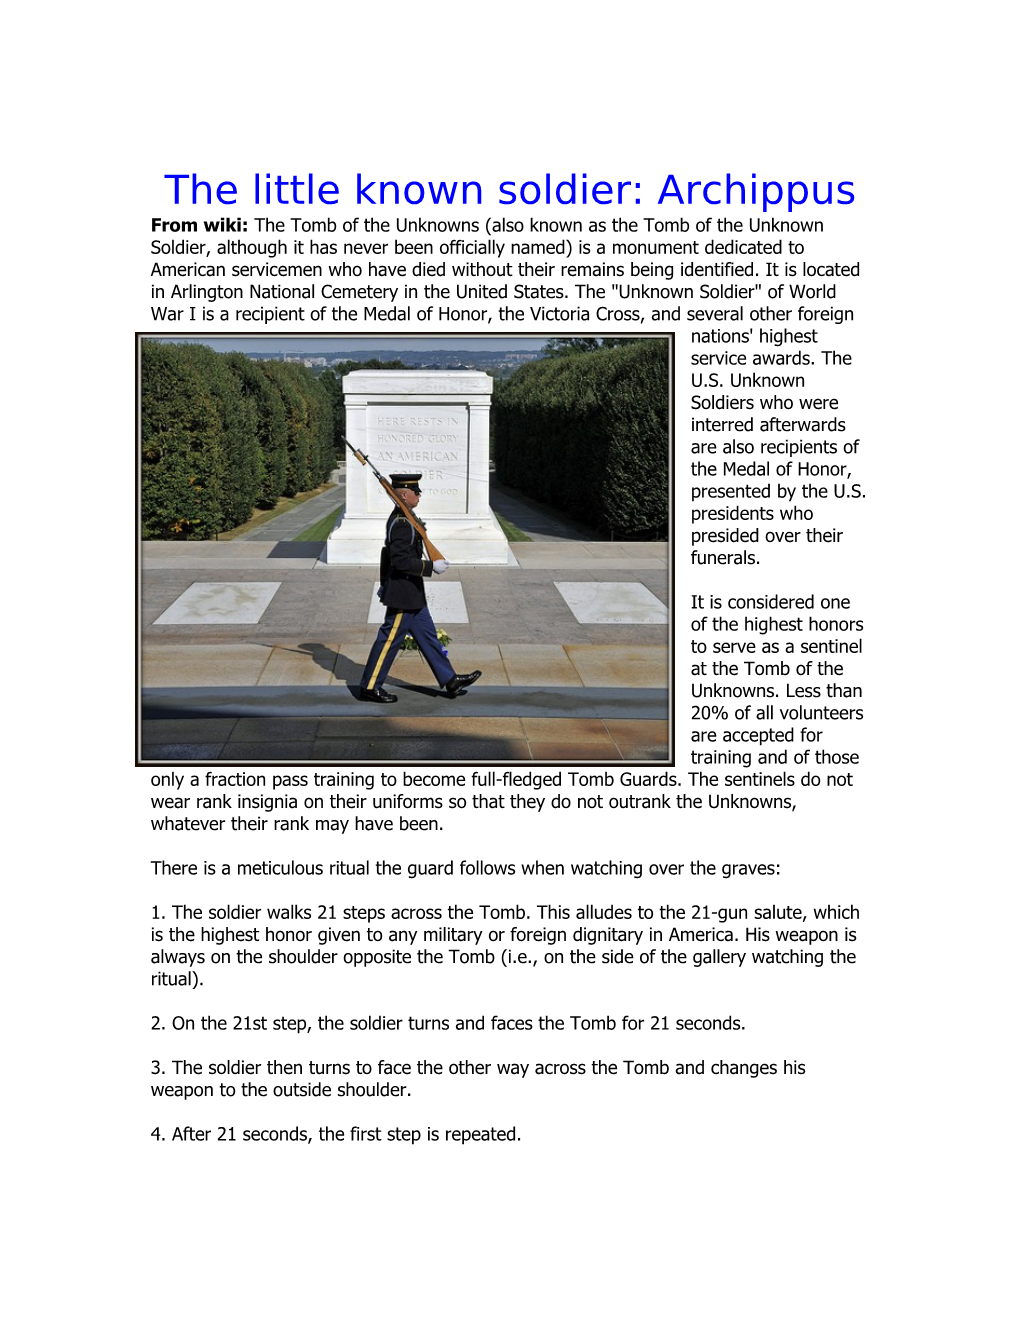 The Little Known Soldier: Archippus